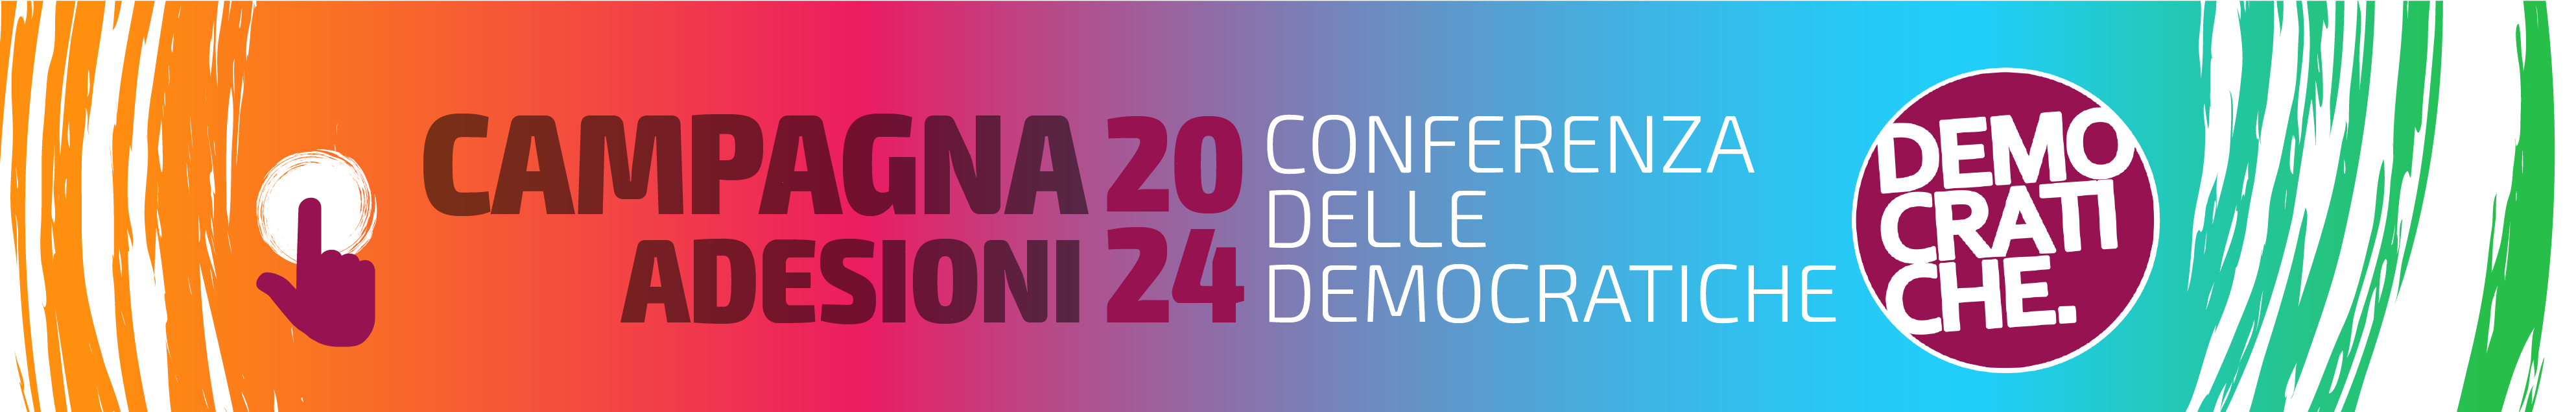 Banner Conferenza delle democratiche